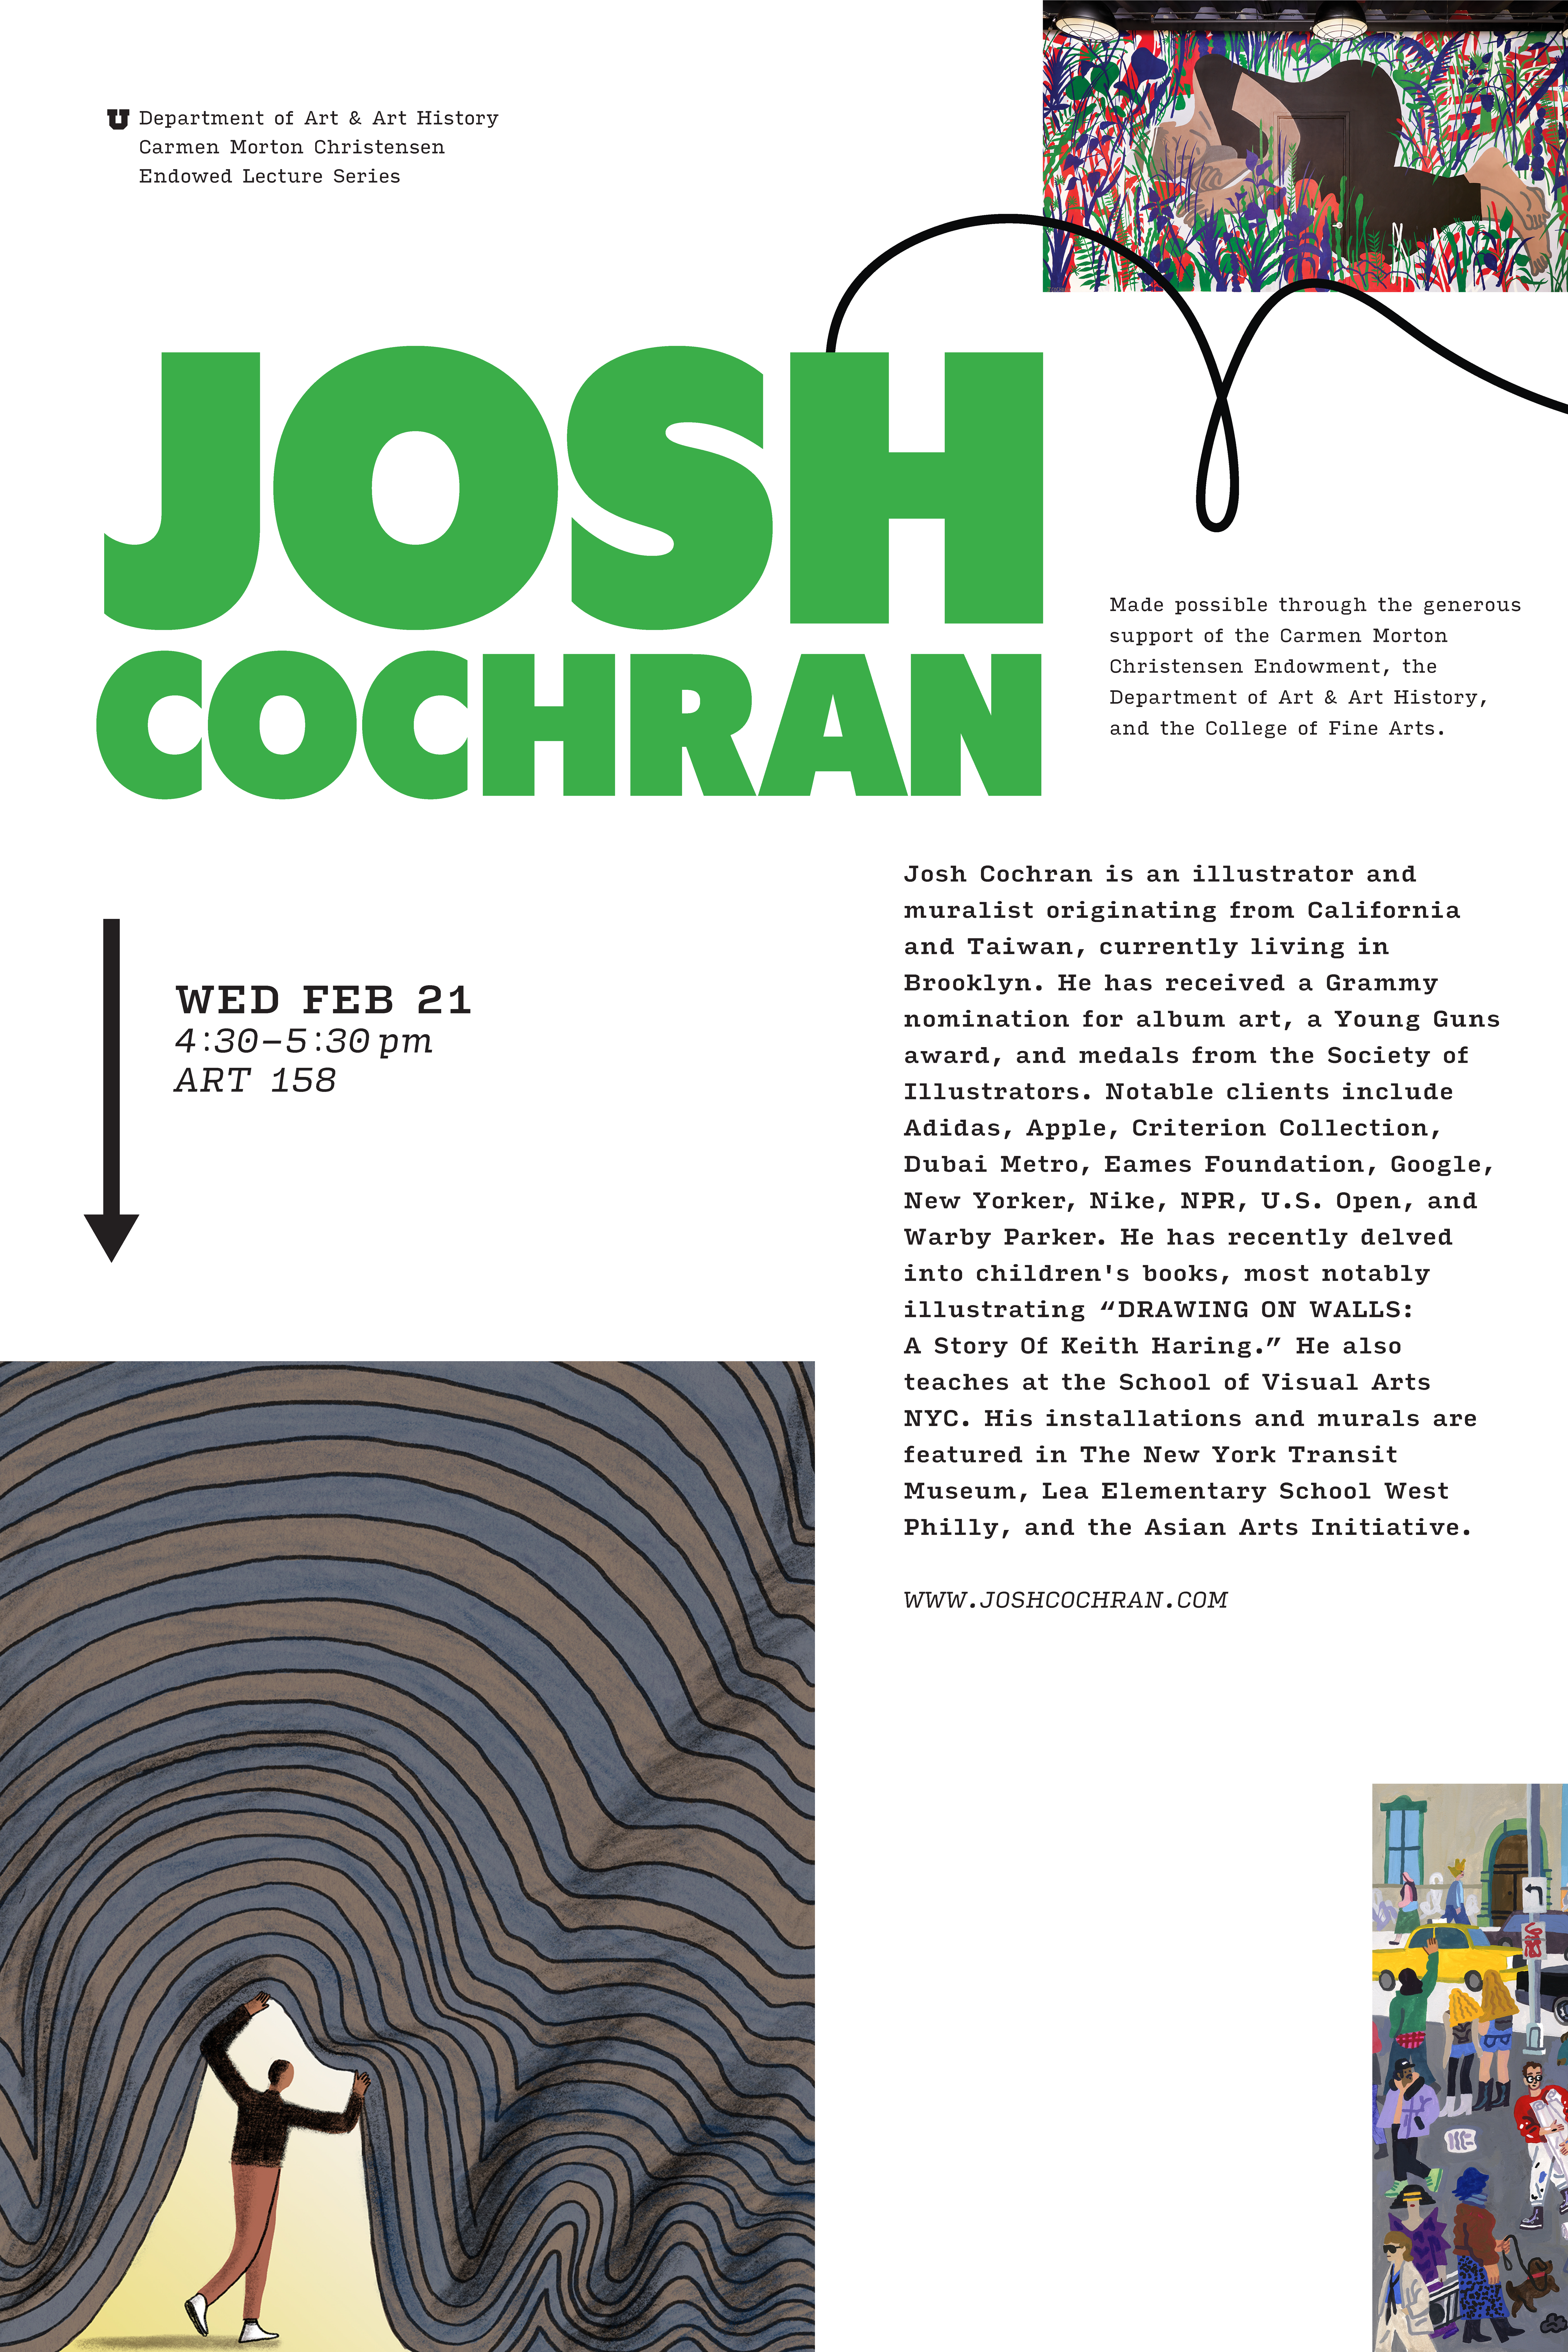 Visiting artist Josh Cochran poster